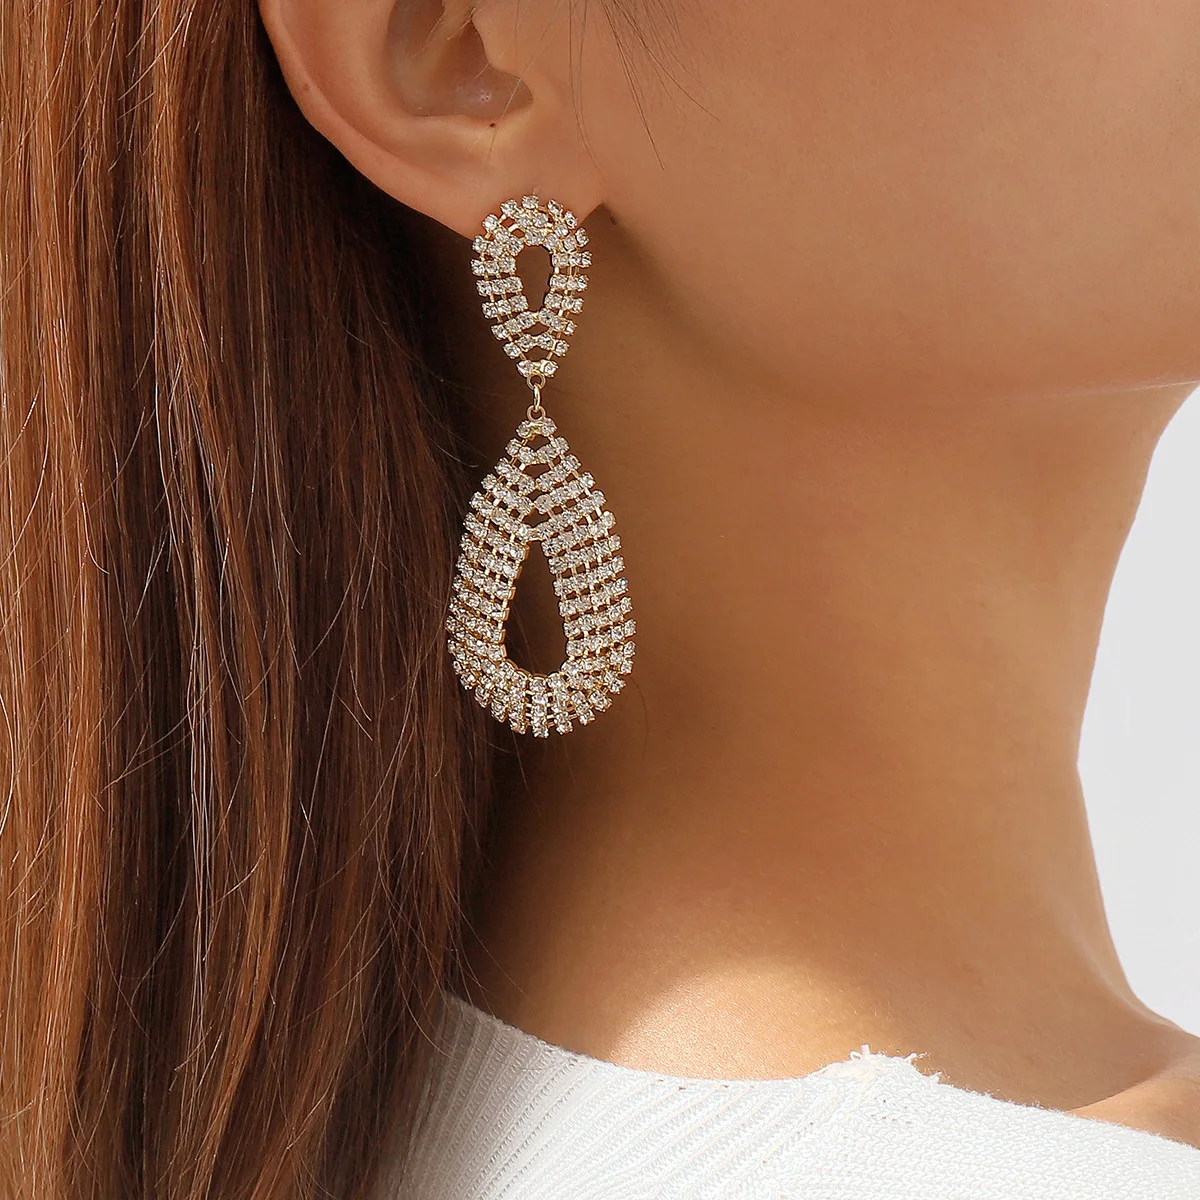 

Elegent Crystal Long Drop Earrings for Women Wedding Dangle Earrings Party Fashion Jewelry Accessories Gift